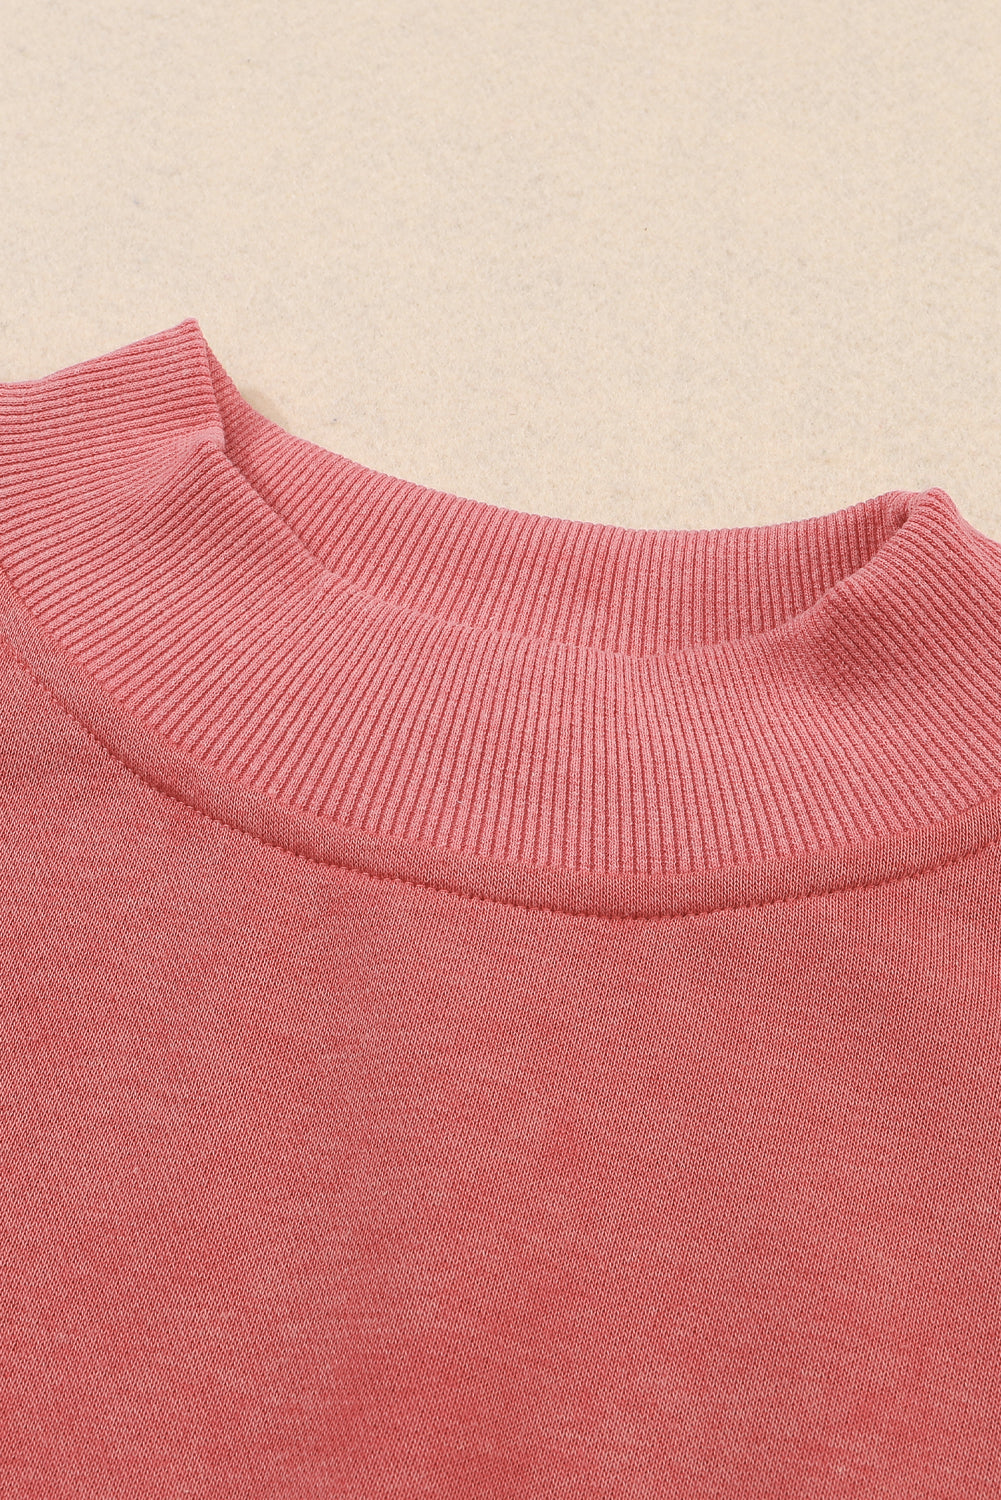 Crvena majica s okruglim izrezom spuštenih ramena u boji Dahlia